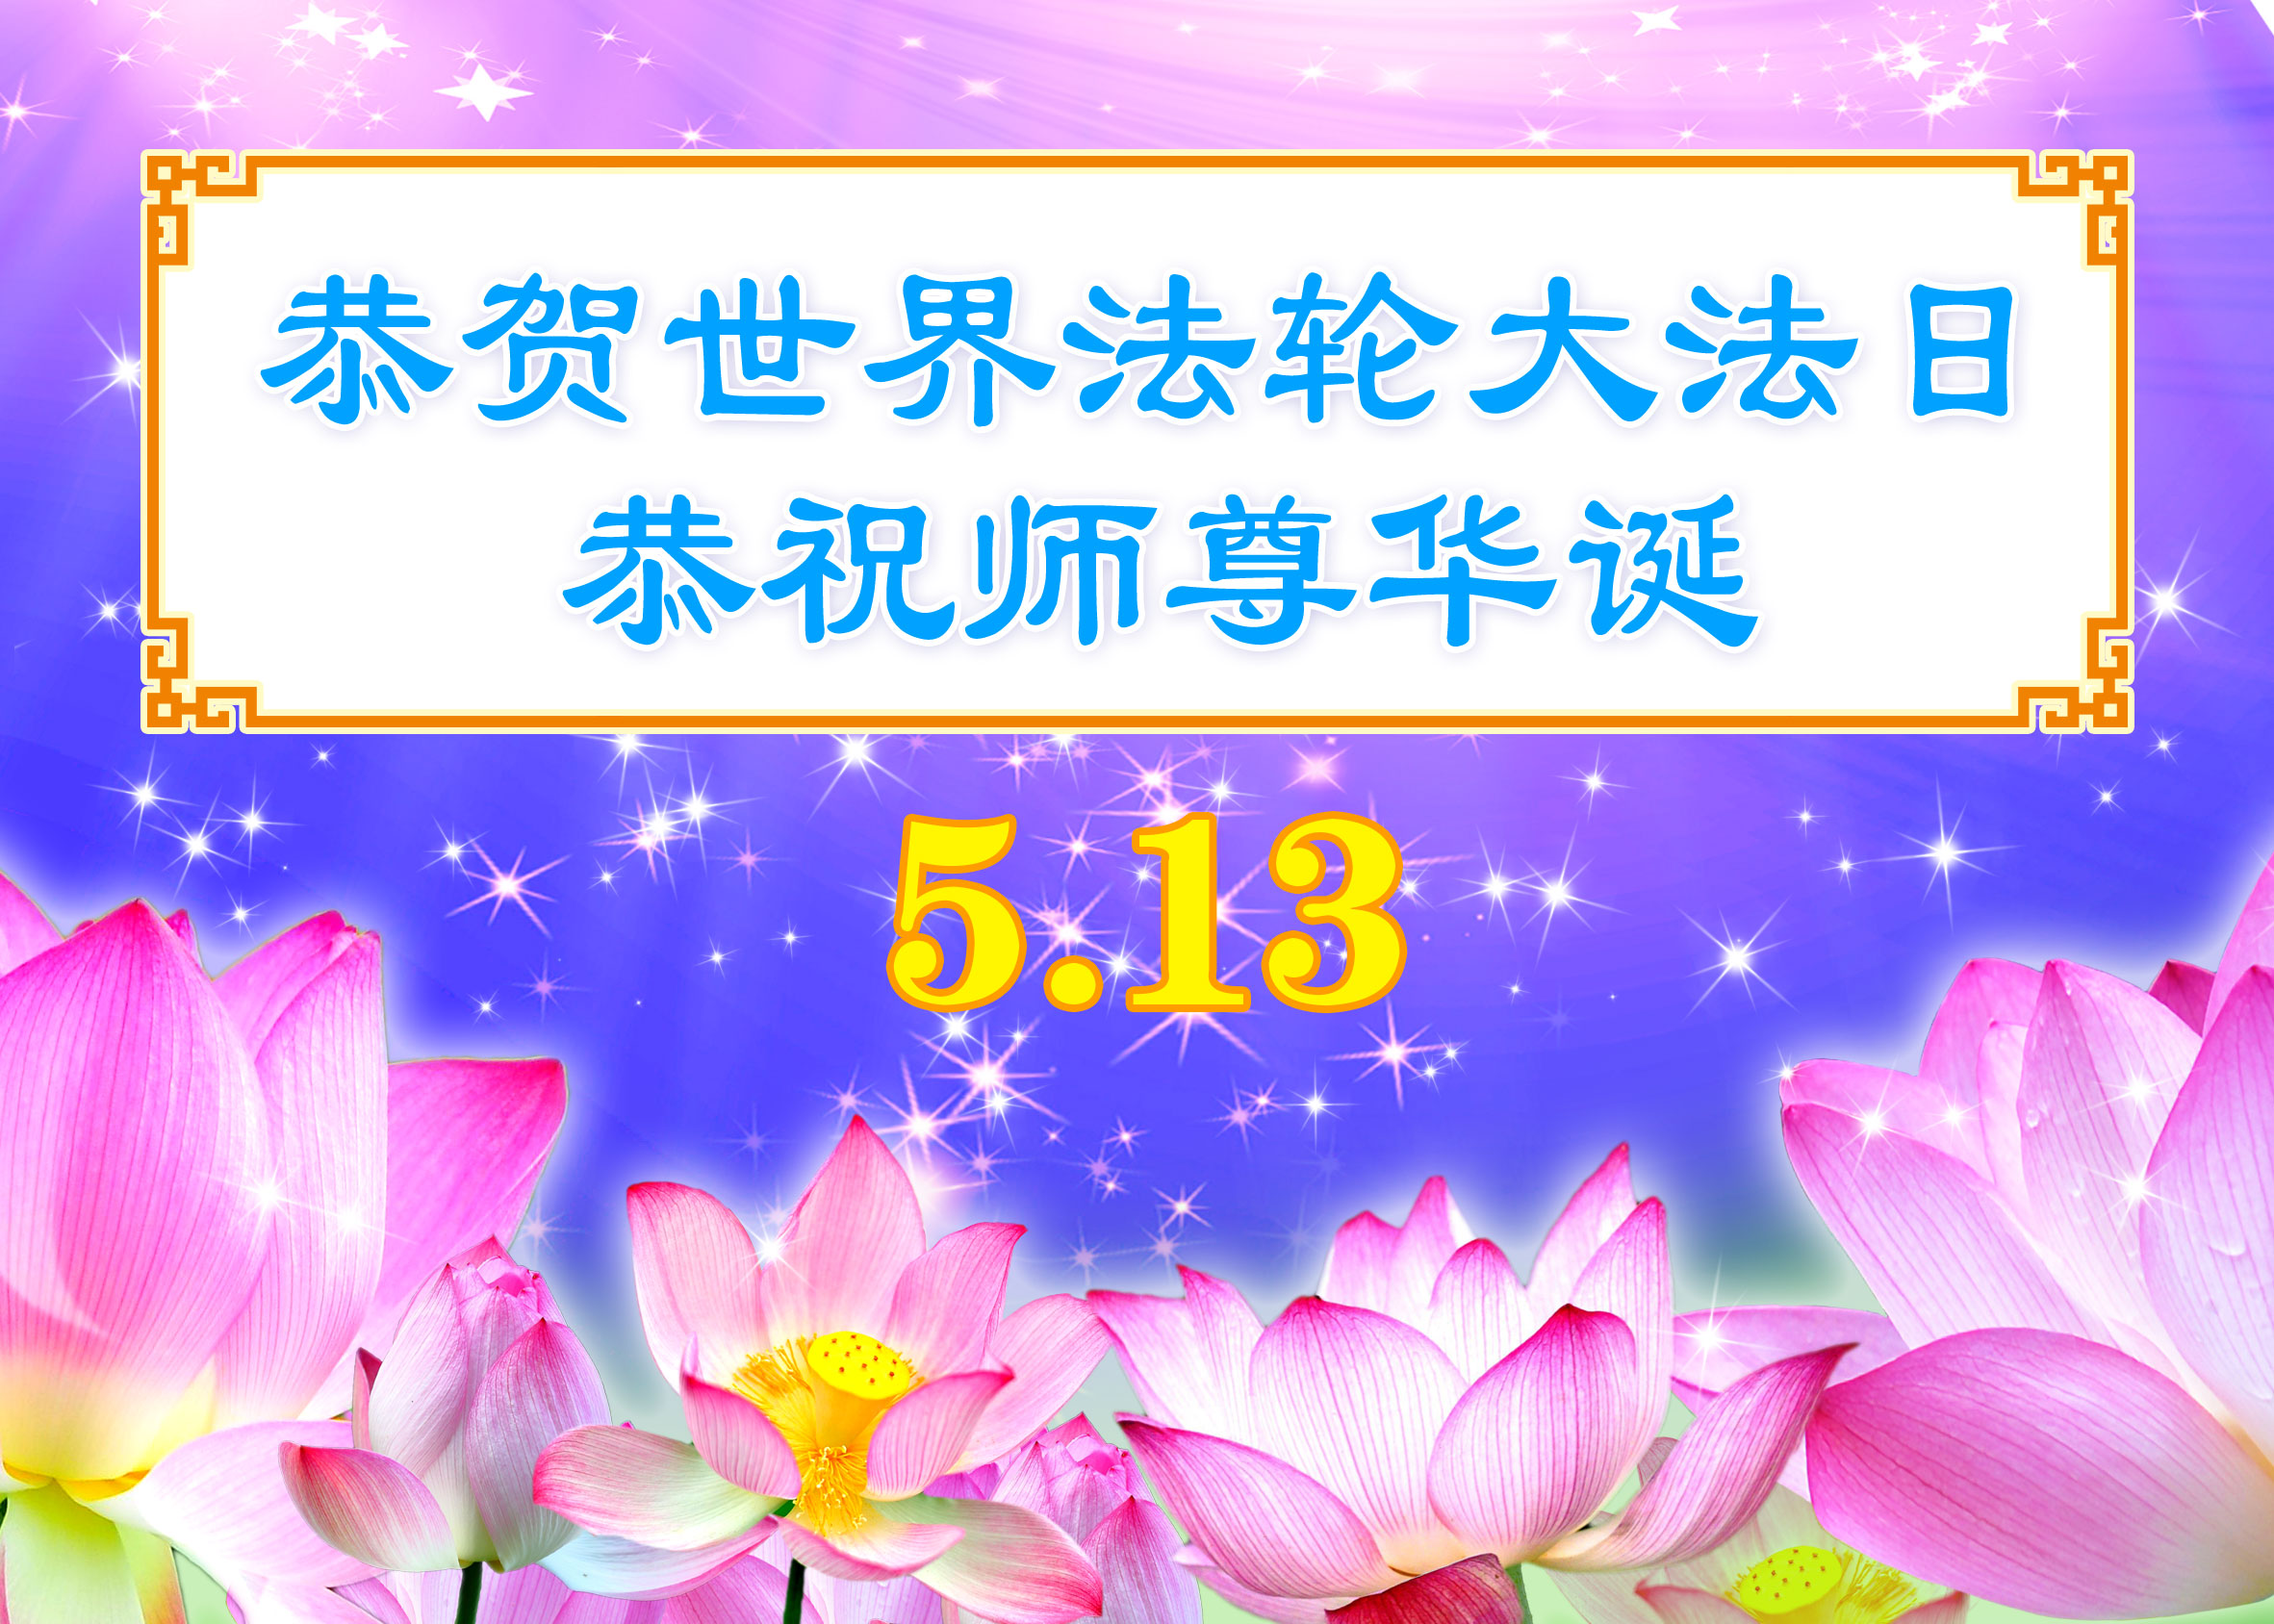 Image for article [Célébrer la Journée mondiale du Falun Dafa] Maître Li m'a enseigné à être une bonne personne